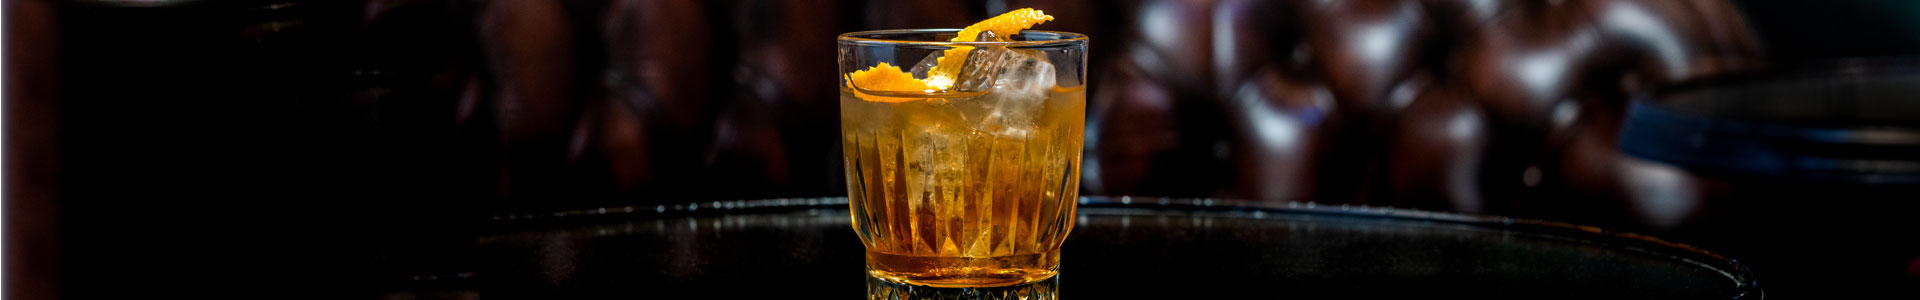 Ein gefülltes Glas aus der Serie Winchester von Libbey steht in einer Bar auf dem Tisch.